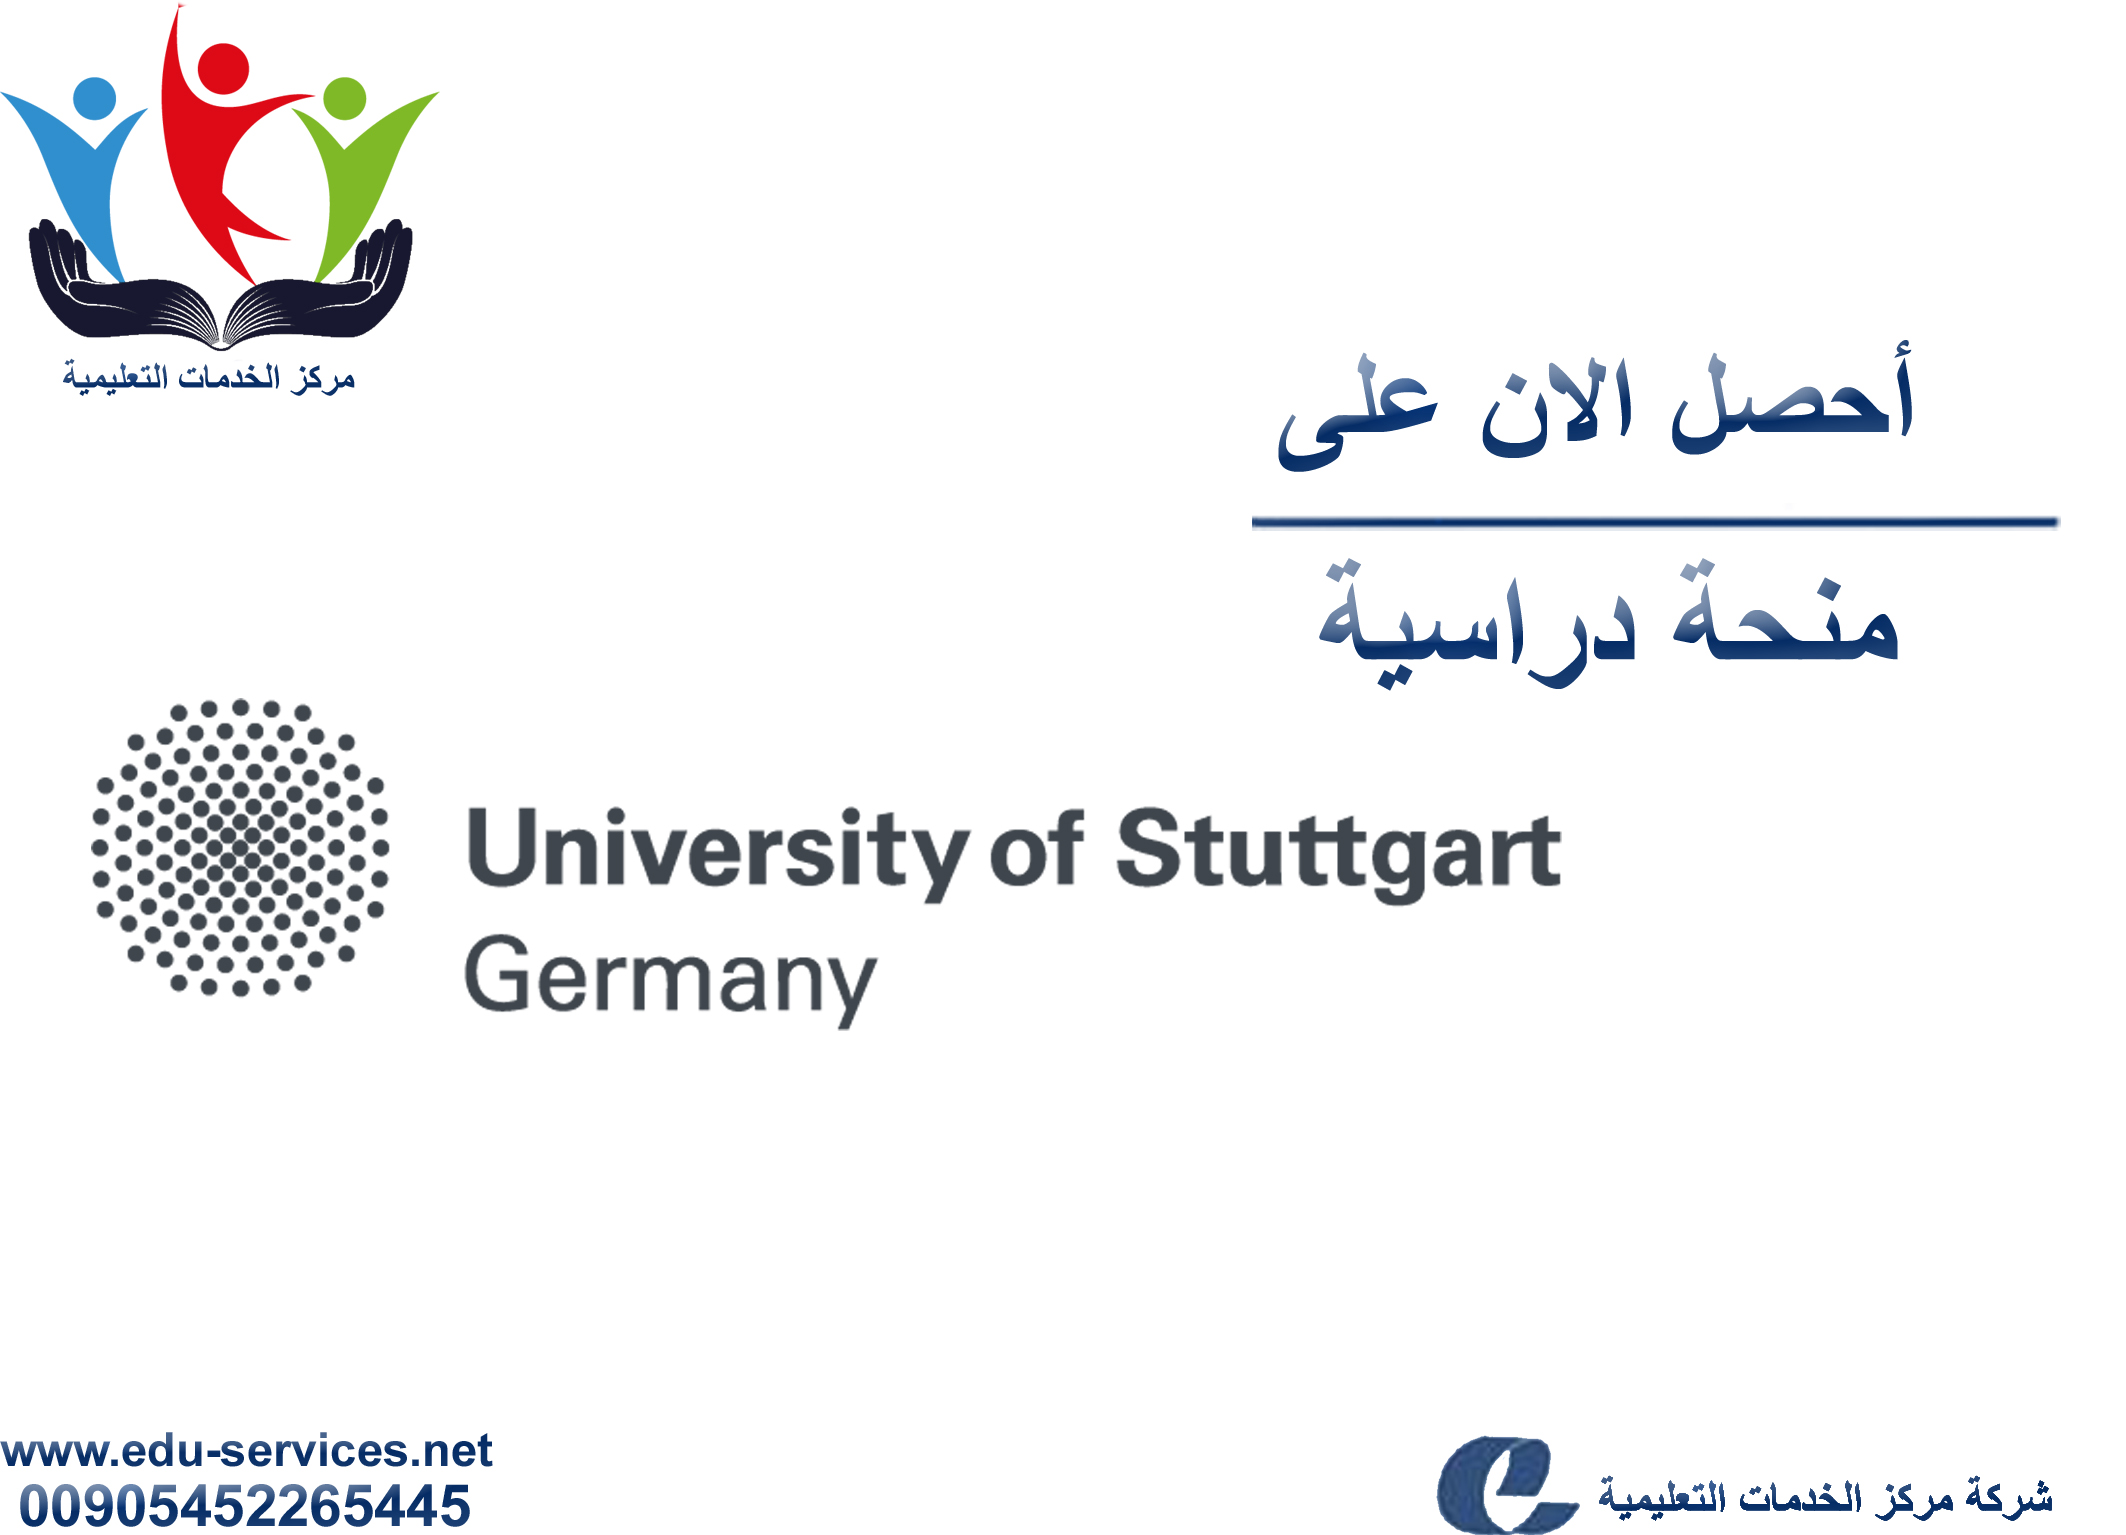 منح دراسية لدرجة الماجستير من UoS في ألمانيا للعام 2018-2019